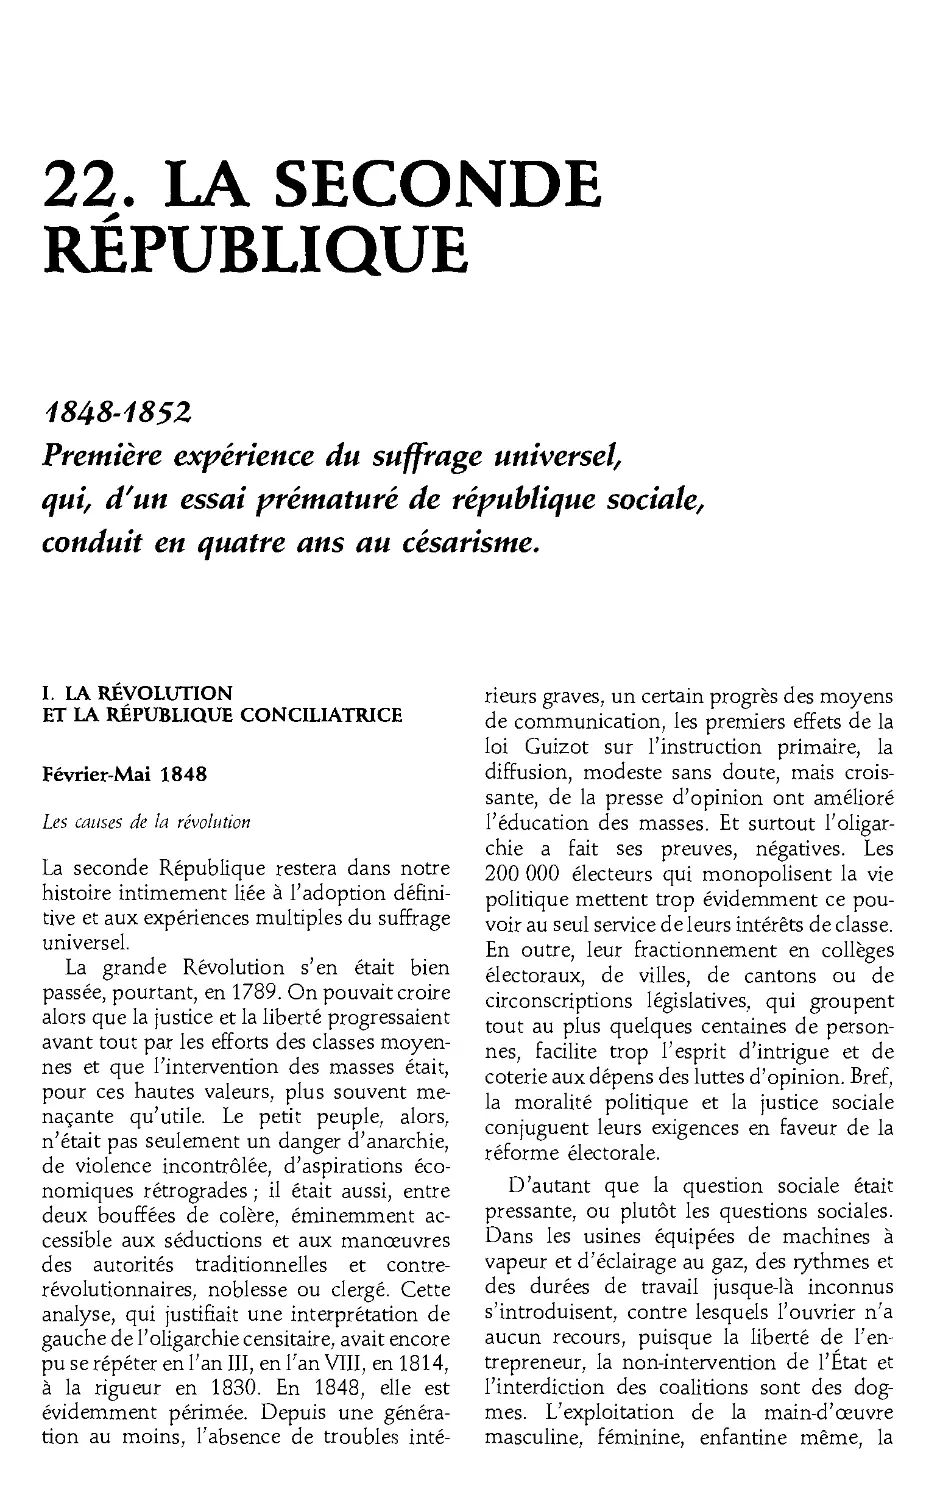 22. La IIe Republique, 1848-1852 [616]